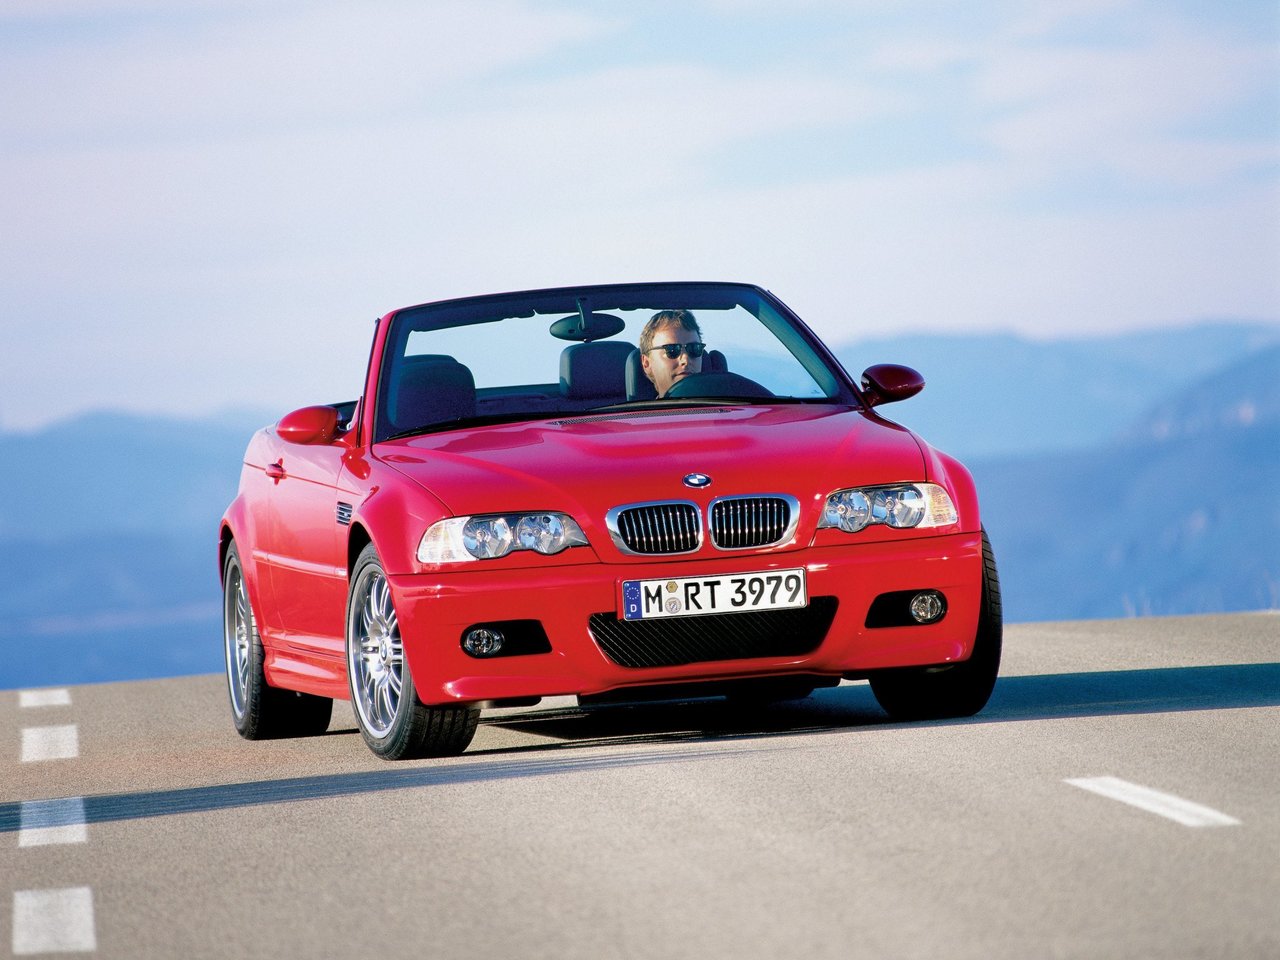 Расход газа одной комплектации кабриолета BMW M3. Разница стоимости заправки газом и бензином. Автономный пробег до и после установки ГБО.